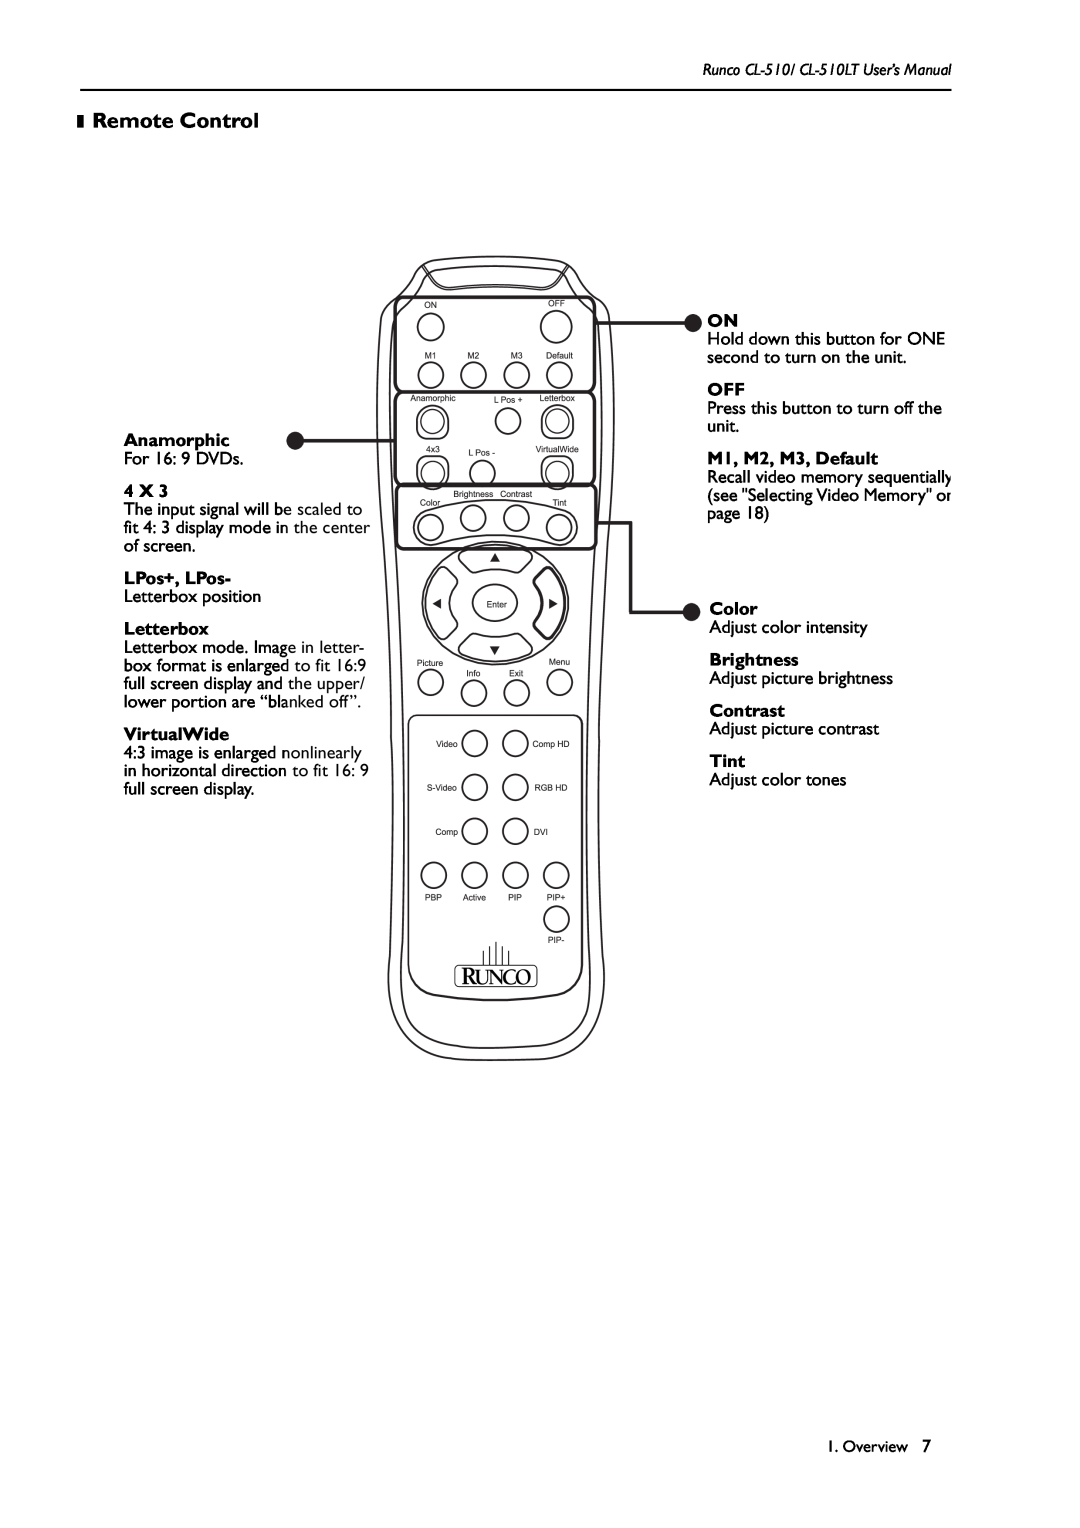 Runco CL-510LT manual Remote Control 